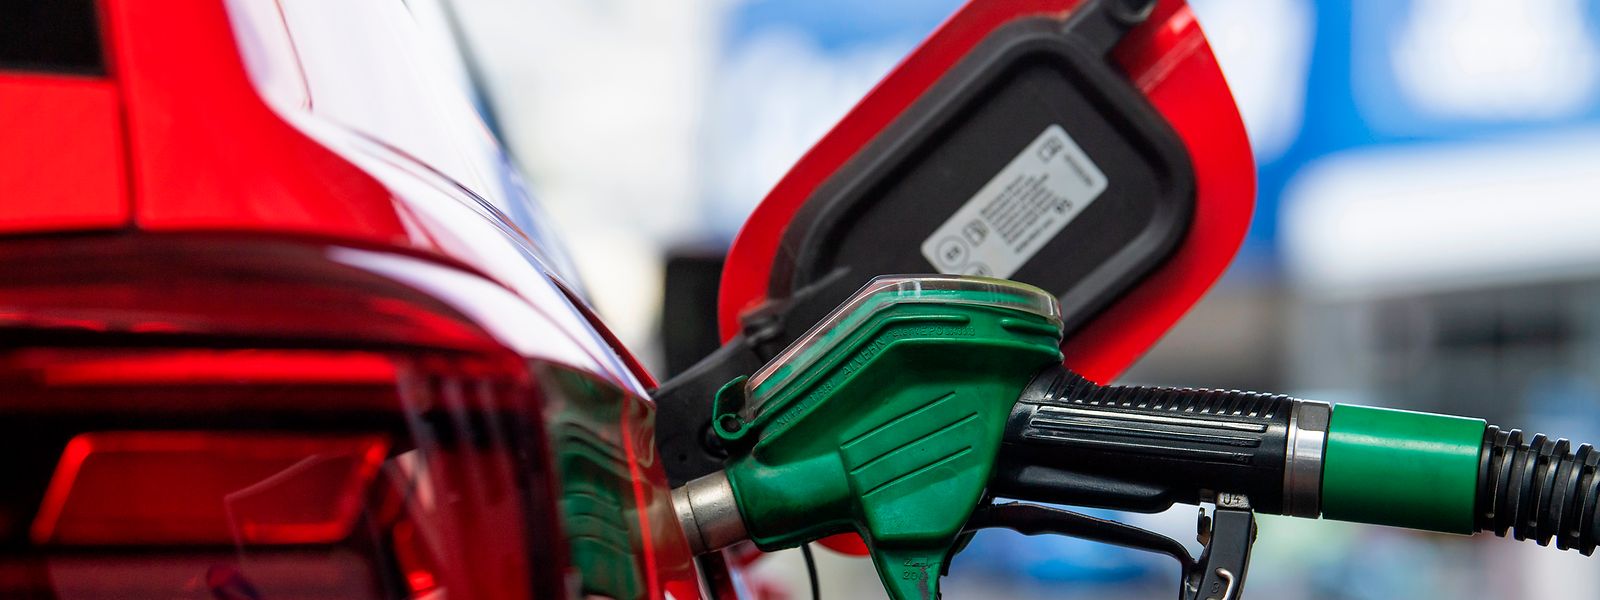  Diesel, Benzin und Heizöl werden am Samstag billiger.